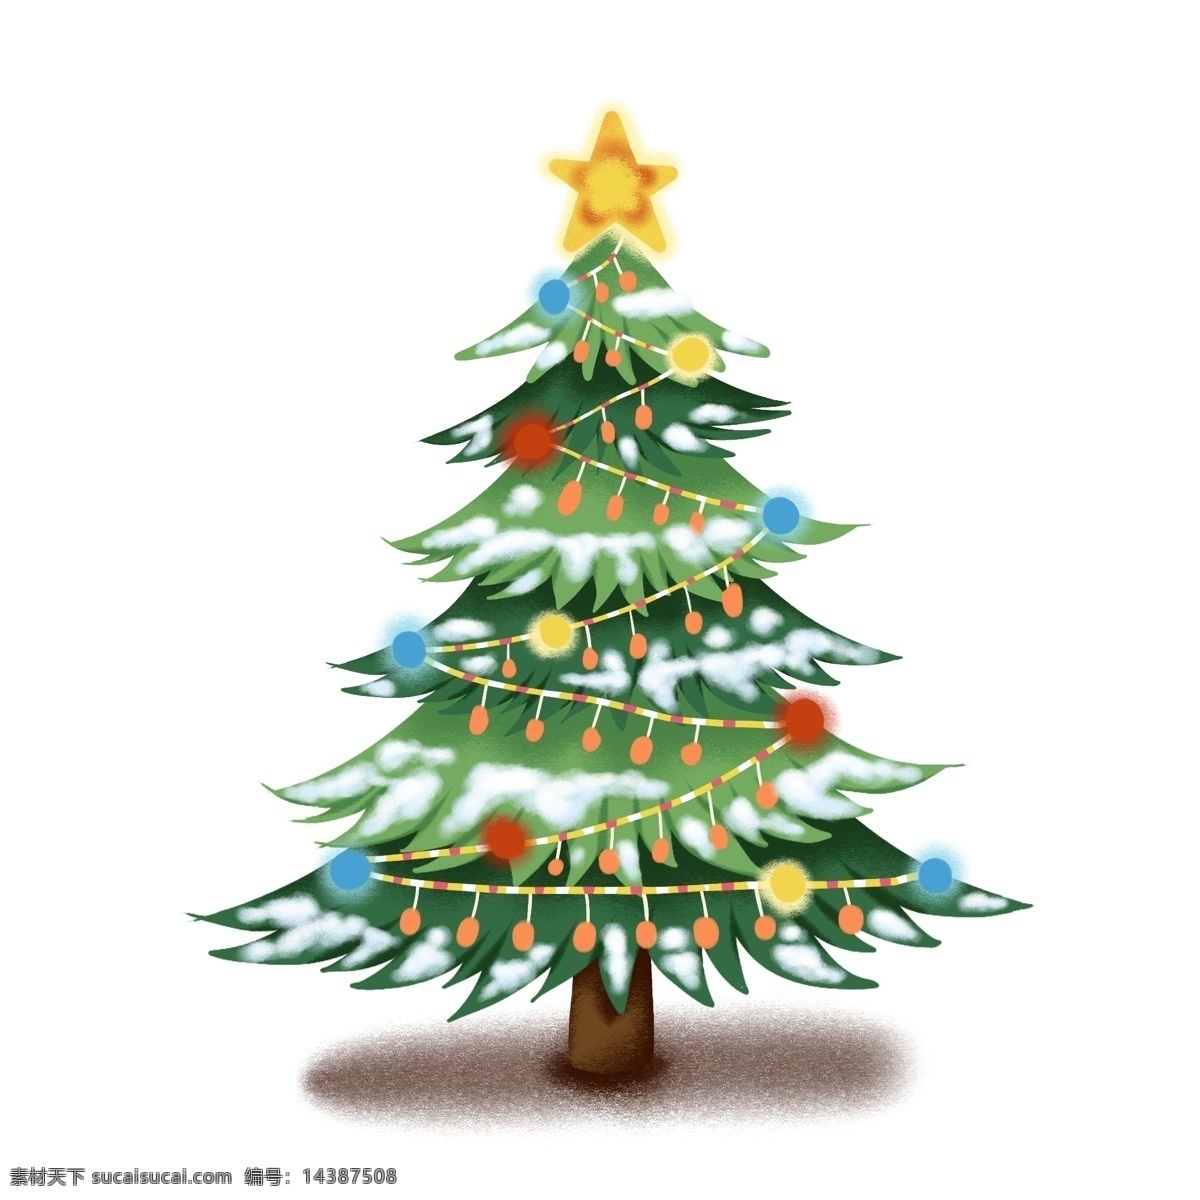 手绘 冬季 树木 圣诞树 插画 商用 分层 手绘冬季树木 卡通礼品树 原创 圣诞礼品 树 ps 设计素材 创意 元素 冬季礼品树木